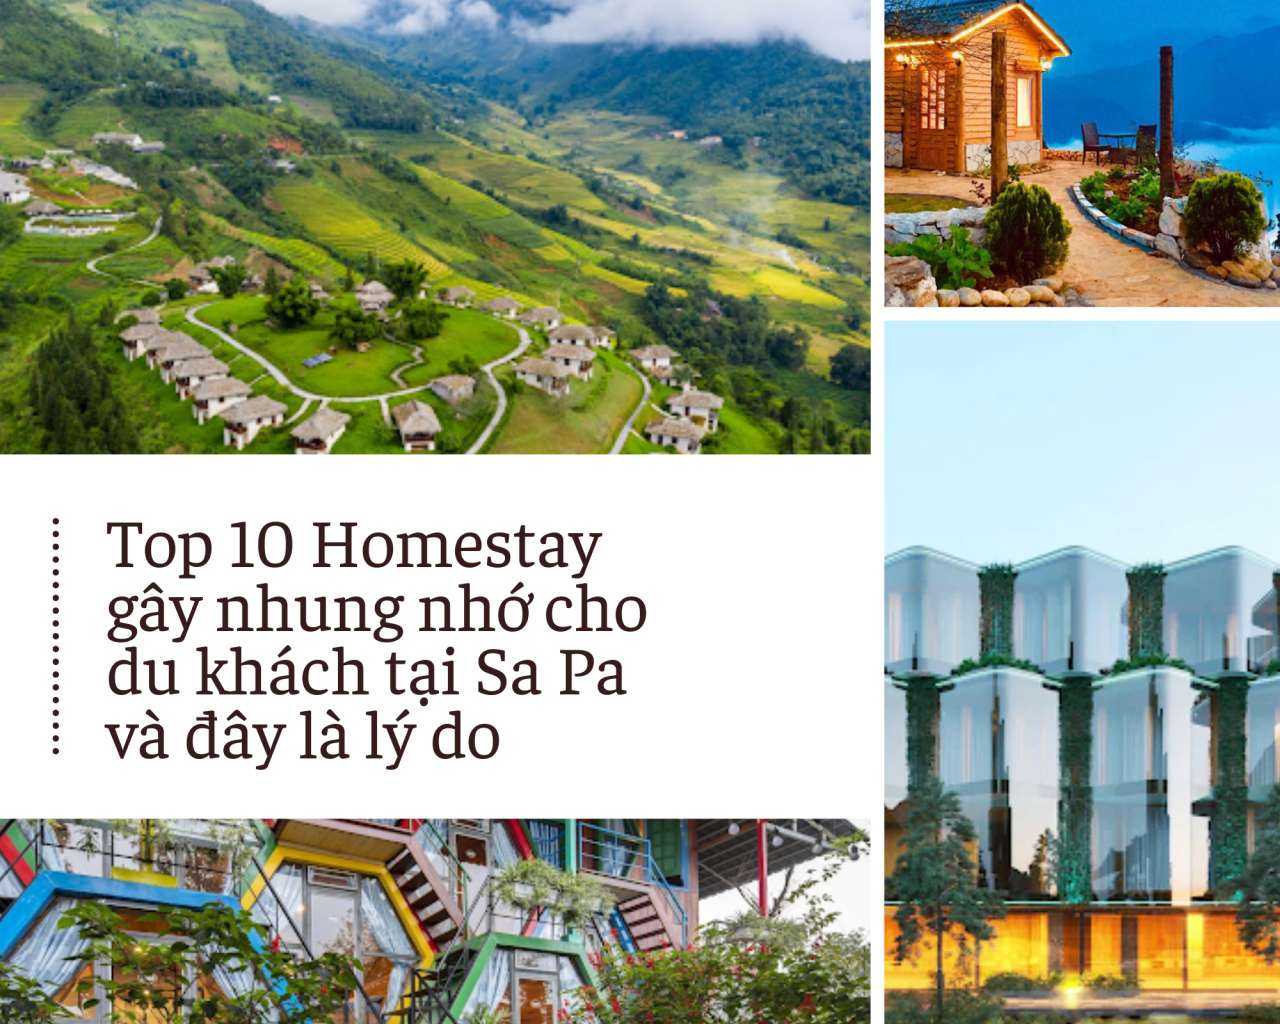 Top 10 Homestay gây nhung nhớ cho du khách tại Sa Pa và đây là lý do